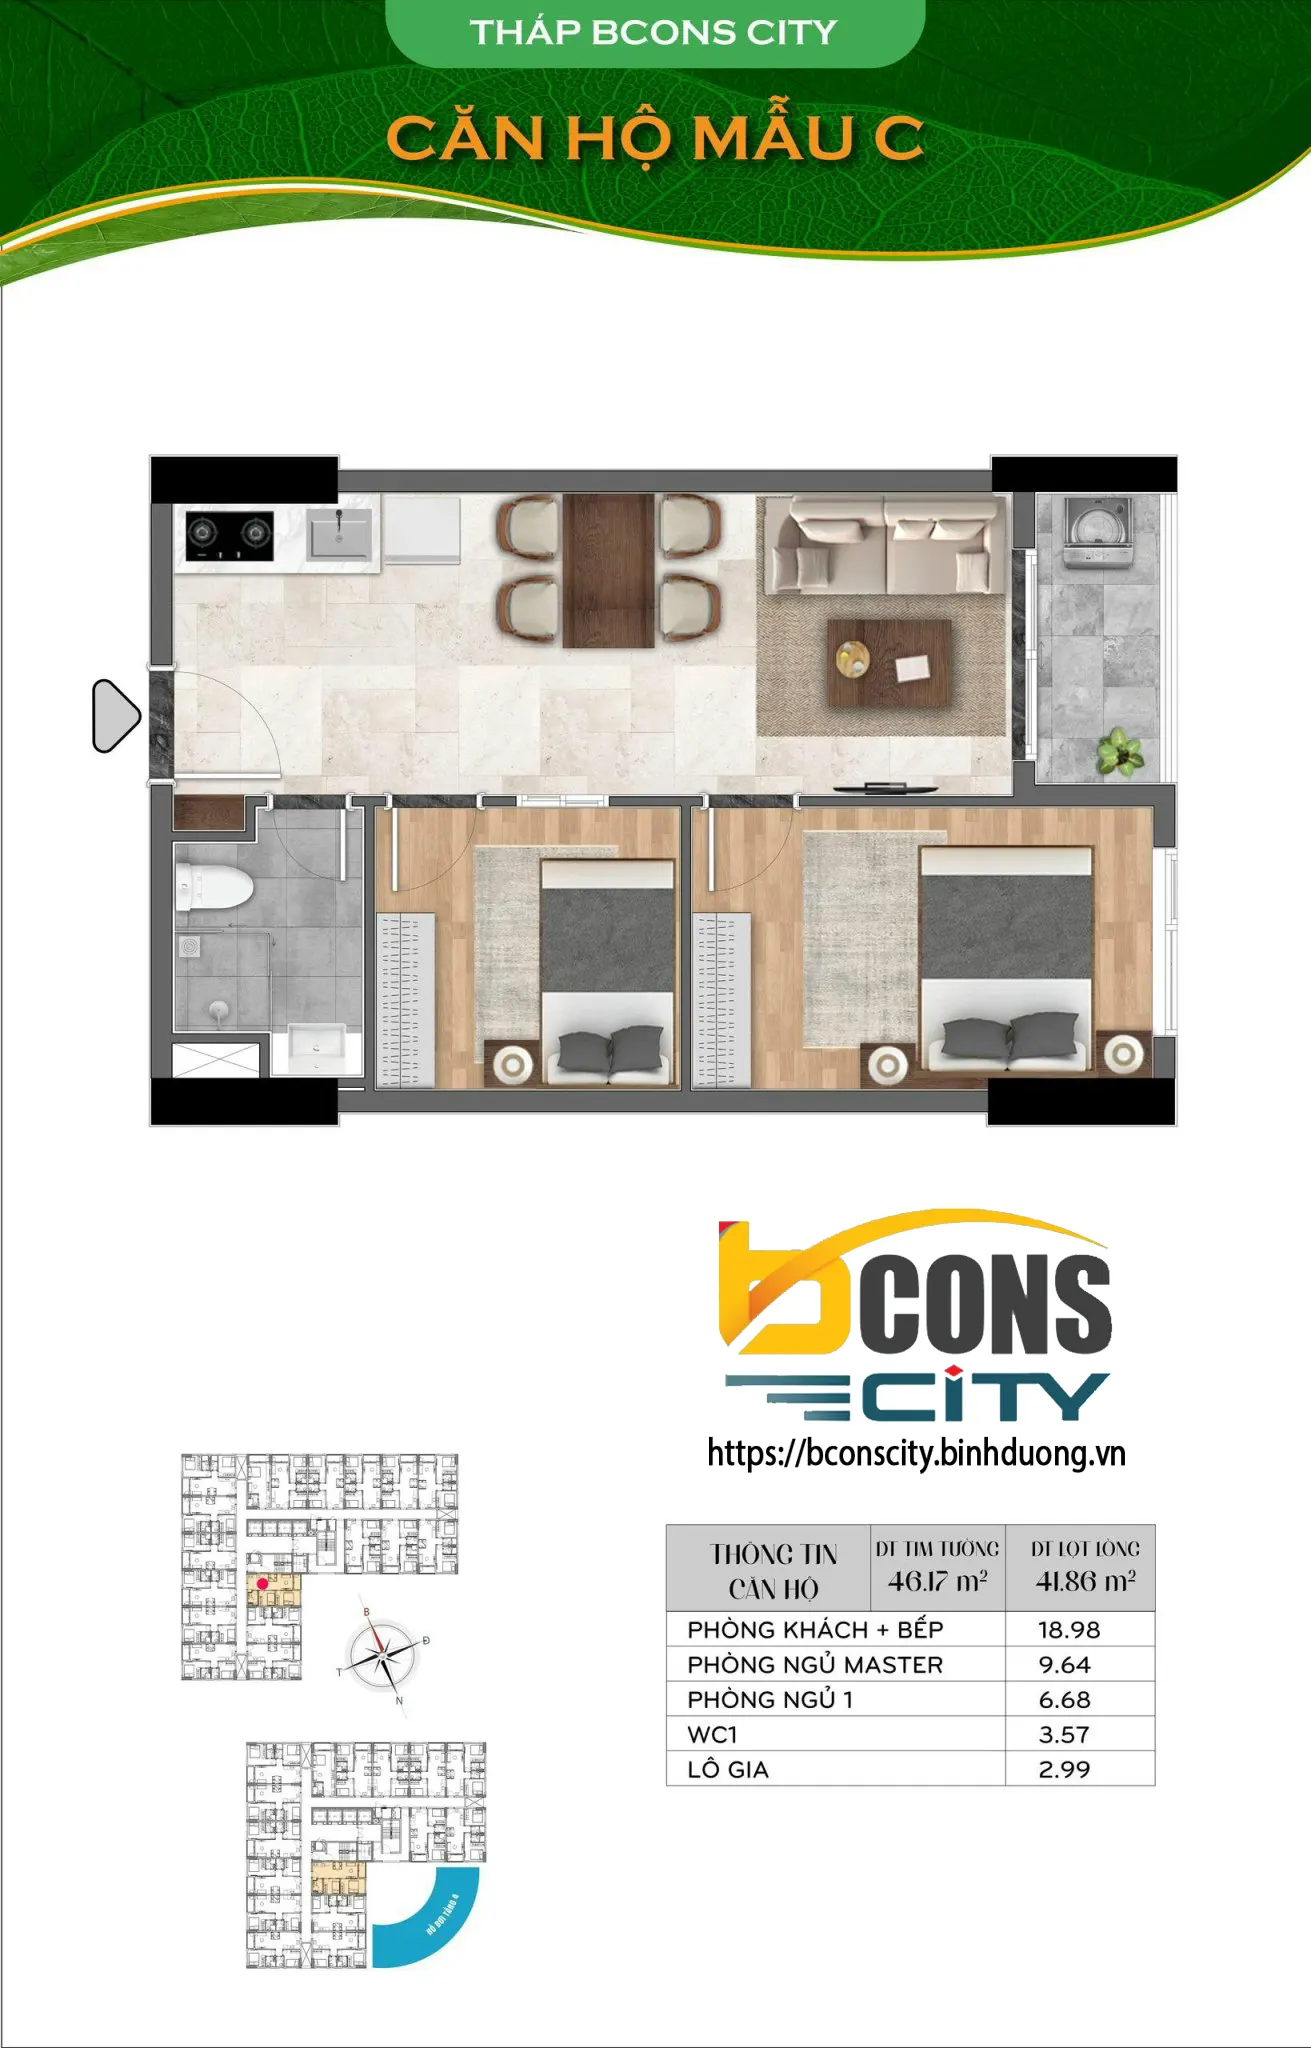 Thiết kế căn hộ mẫu C Bcons City